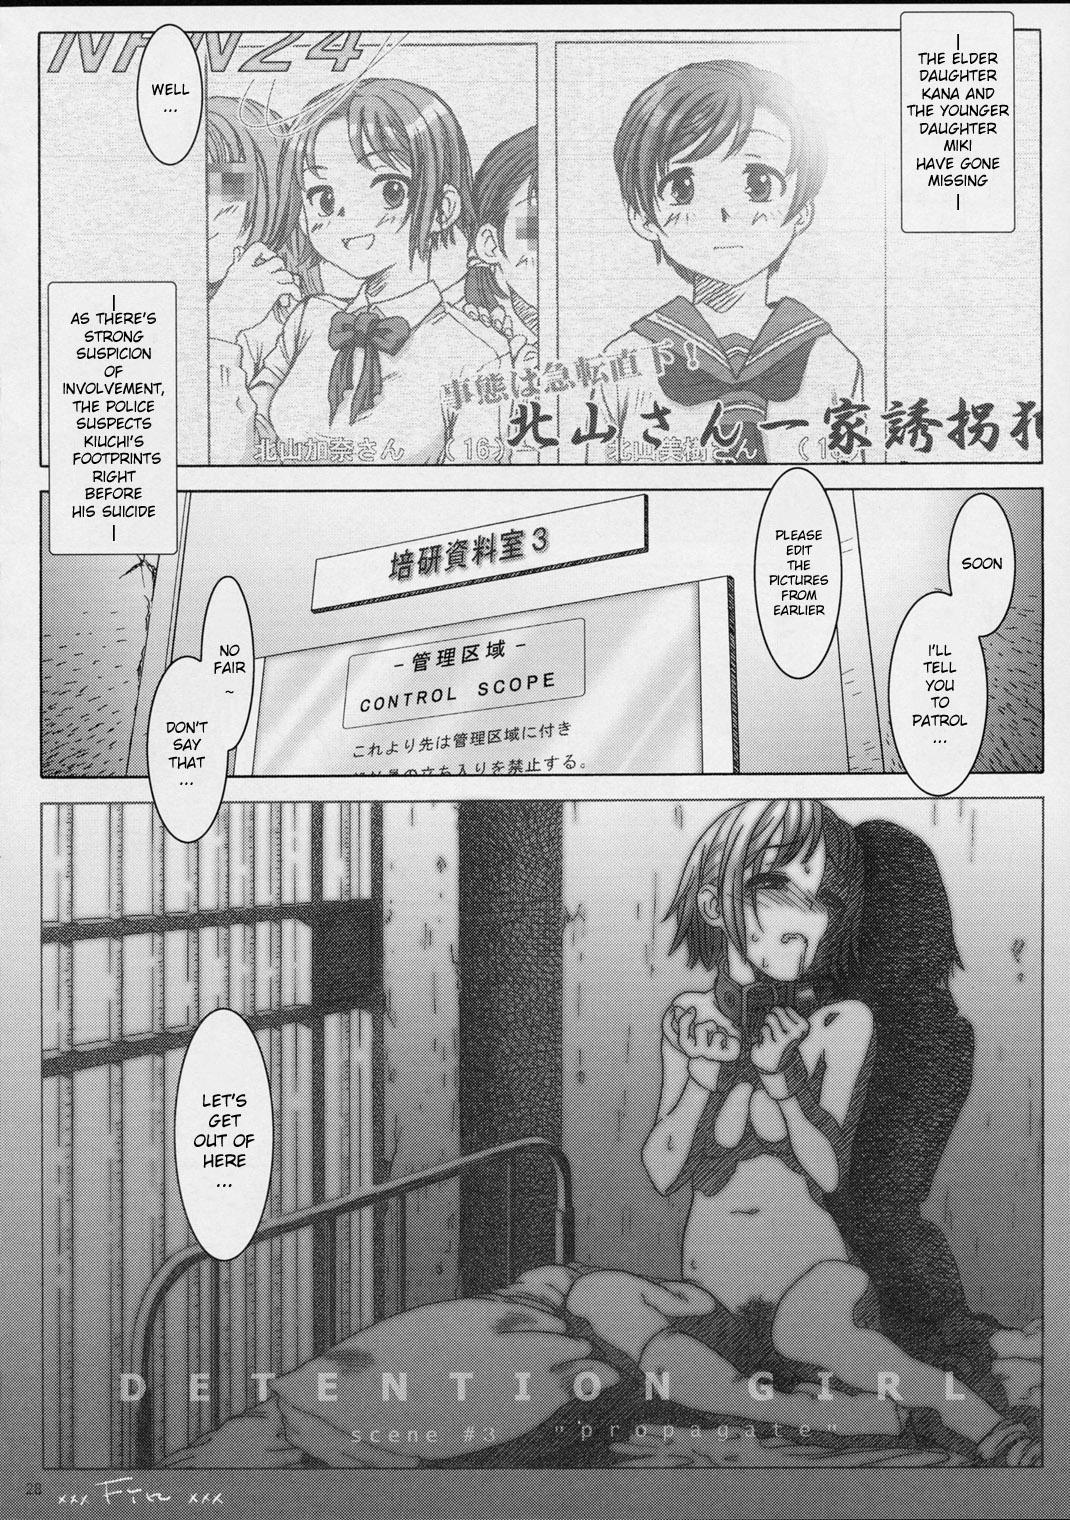 Koukin Shoujo 3 - Detention Girl 3 26